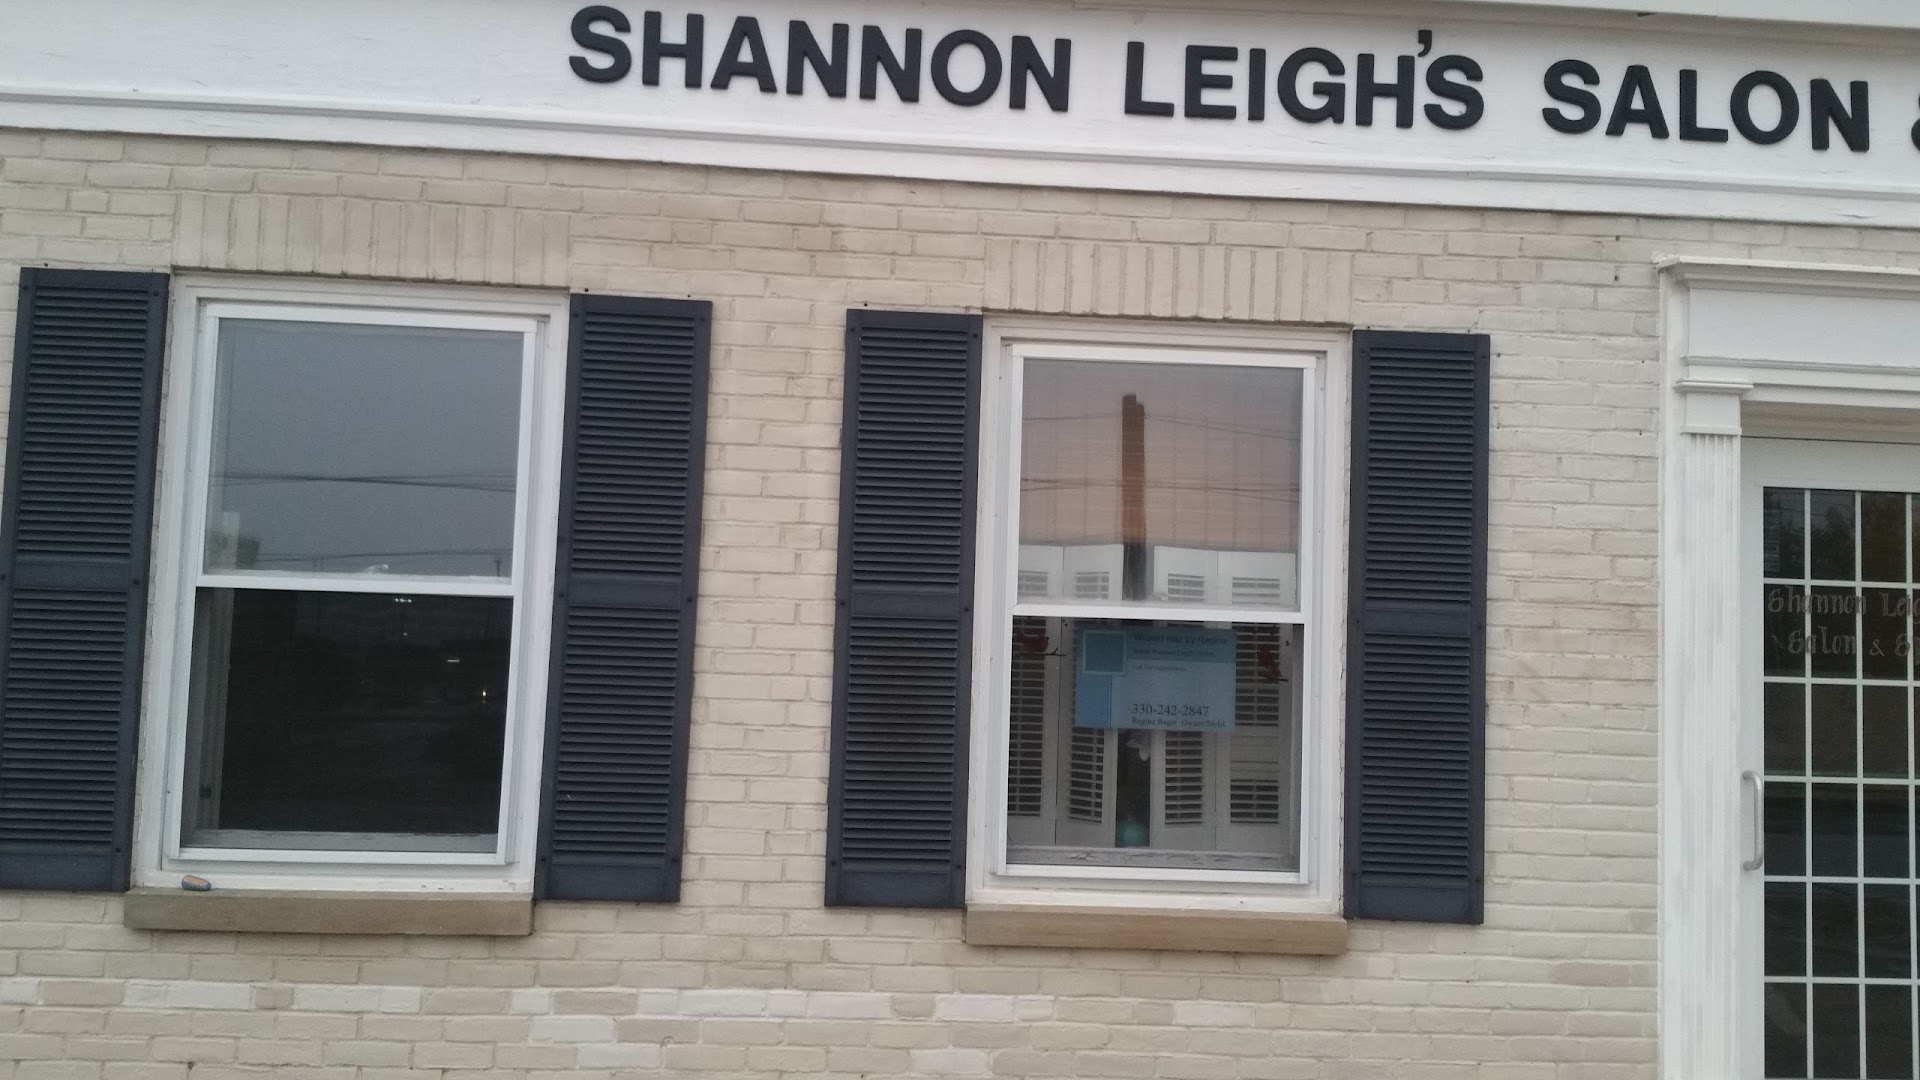 Shannon Leigh's Salon